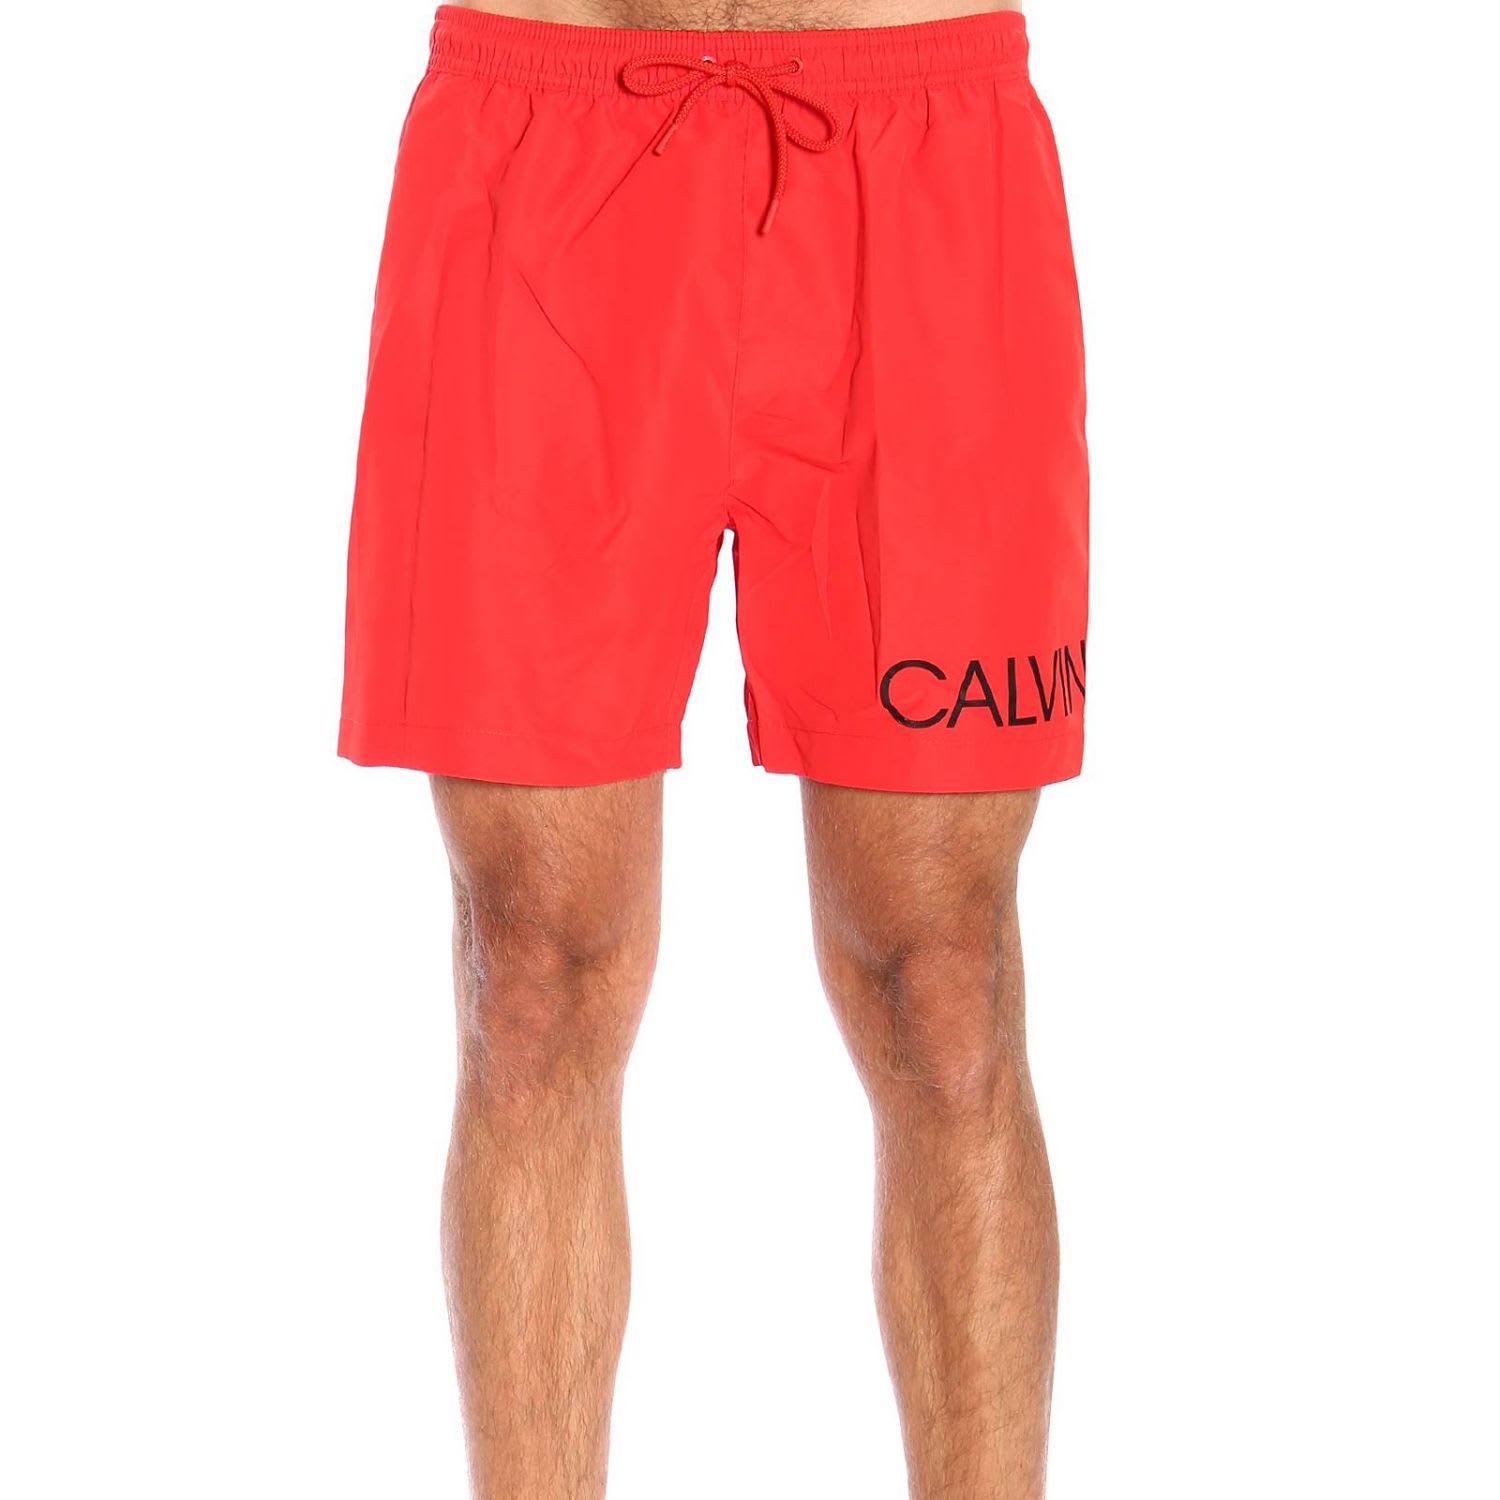 calvin klein swim shorts men